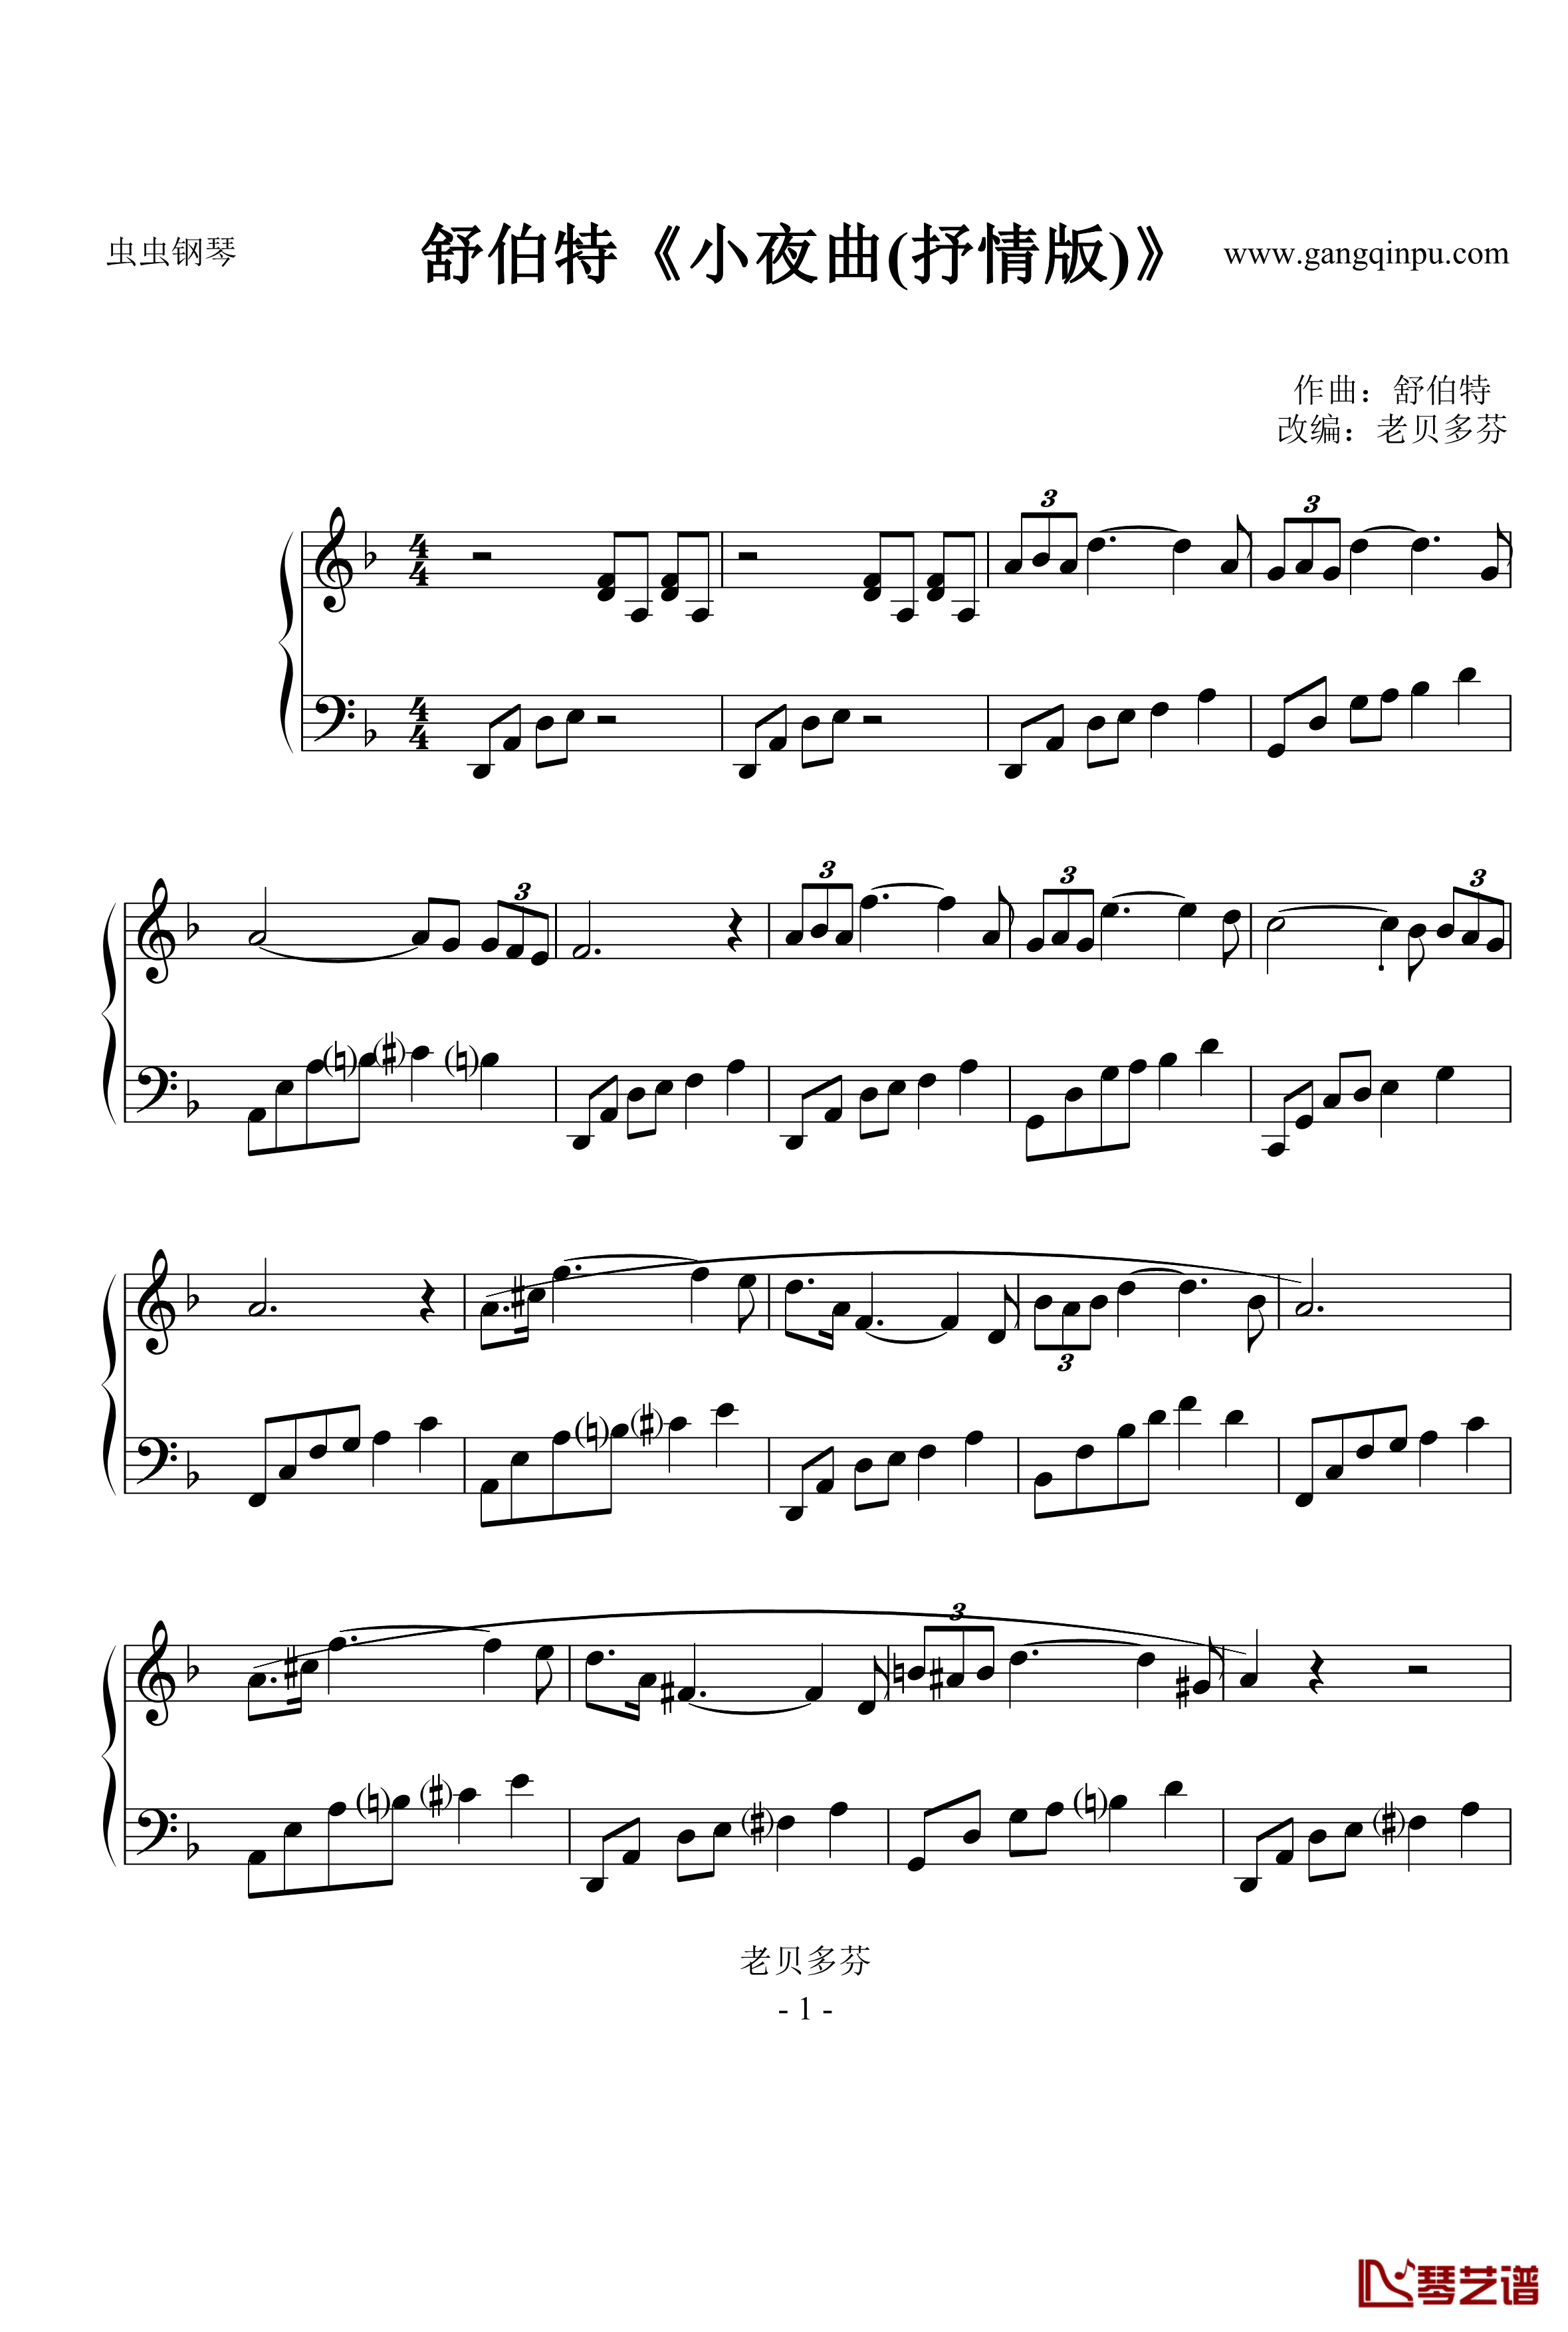 小夜曲抒情版钢琴谱-舒伯特-1